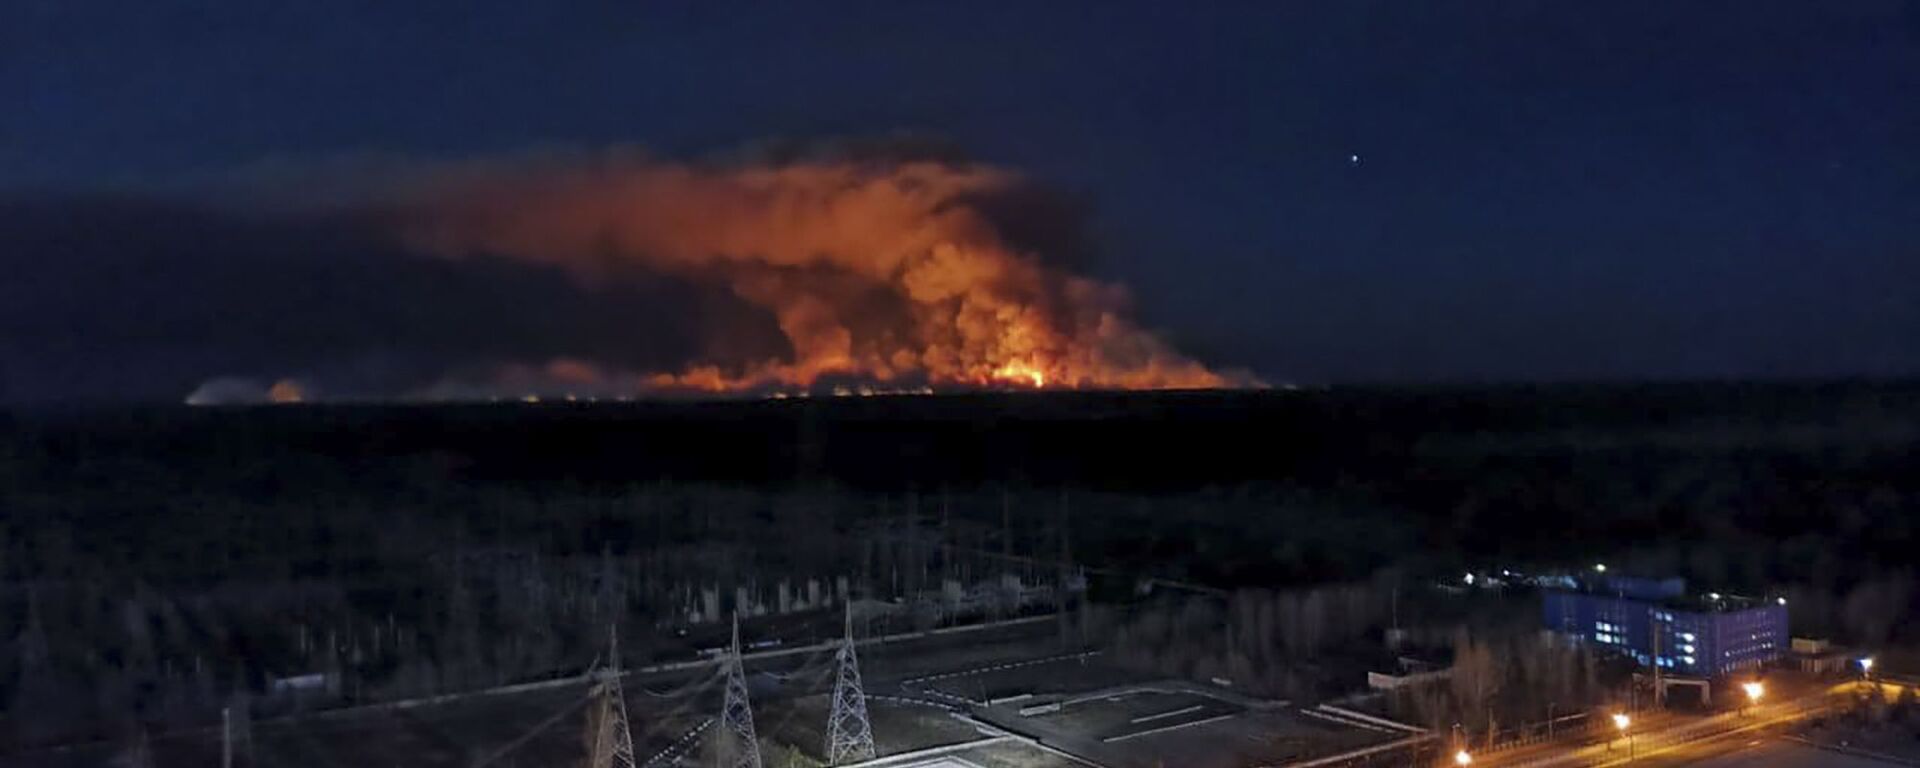 Hỏa hoạn trong khu vực cấm gần Chernobyl - Sputnik Việt Nam, 1920, 29.08.2022